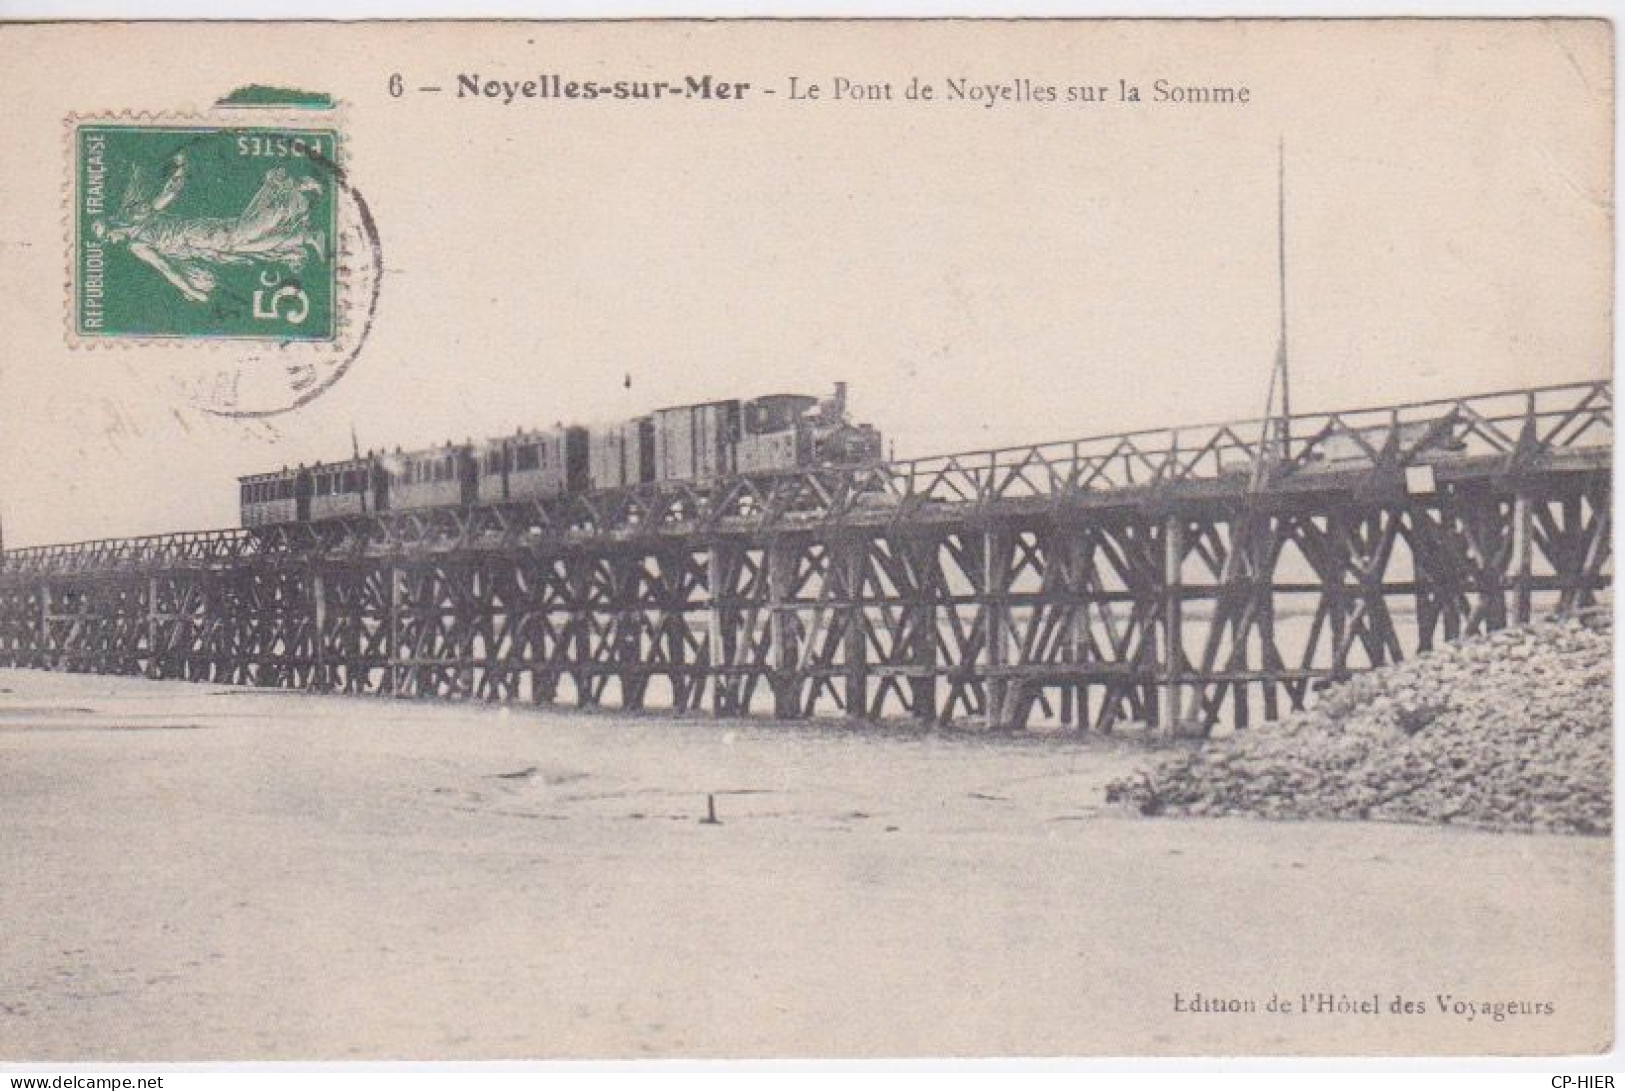 80 - SOMME - NOYELLE SUR MER - TRAIN VAPEUR SUR LE PONT DE NOYELLES - VOIE DU CHEMIN DE FER - Noyelles-sur-Mer